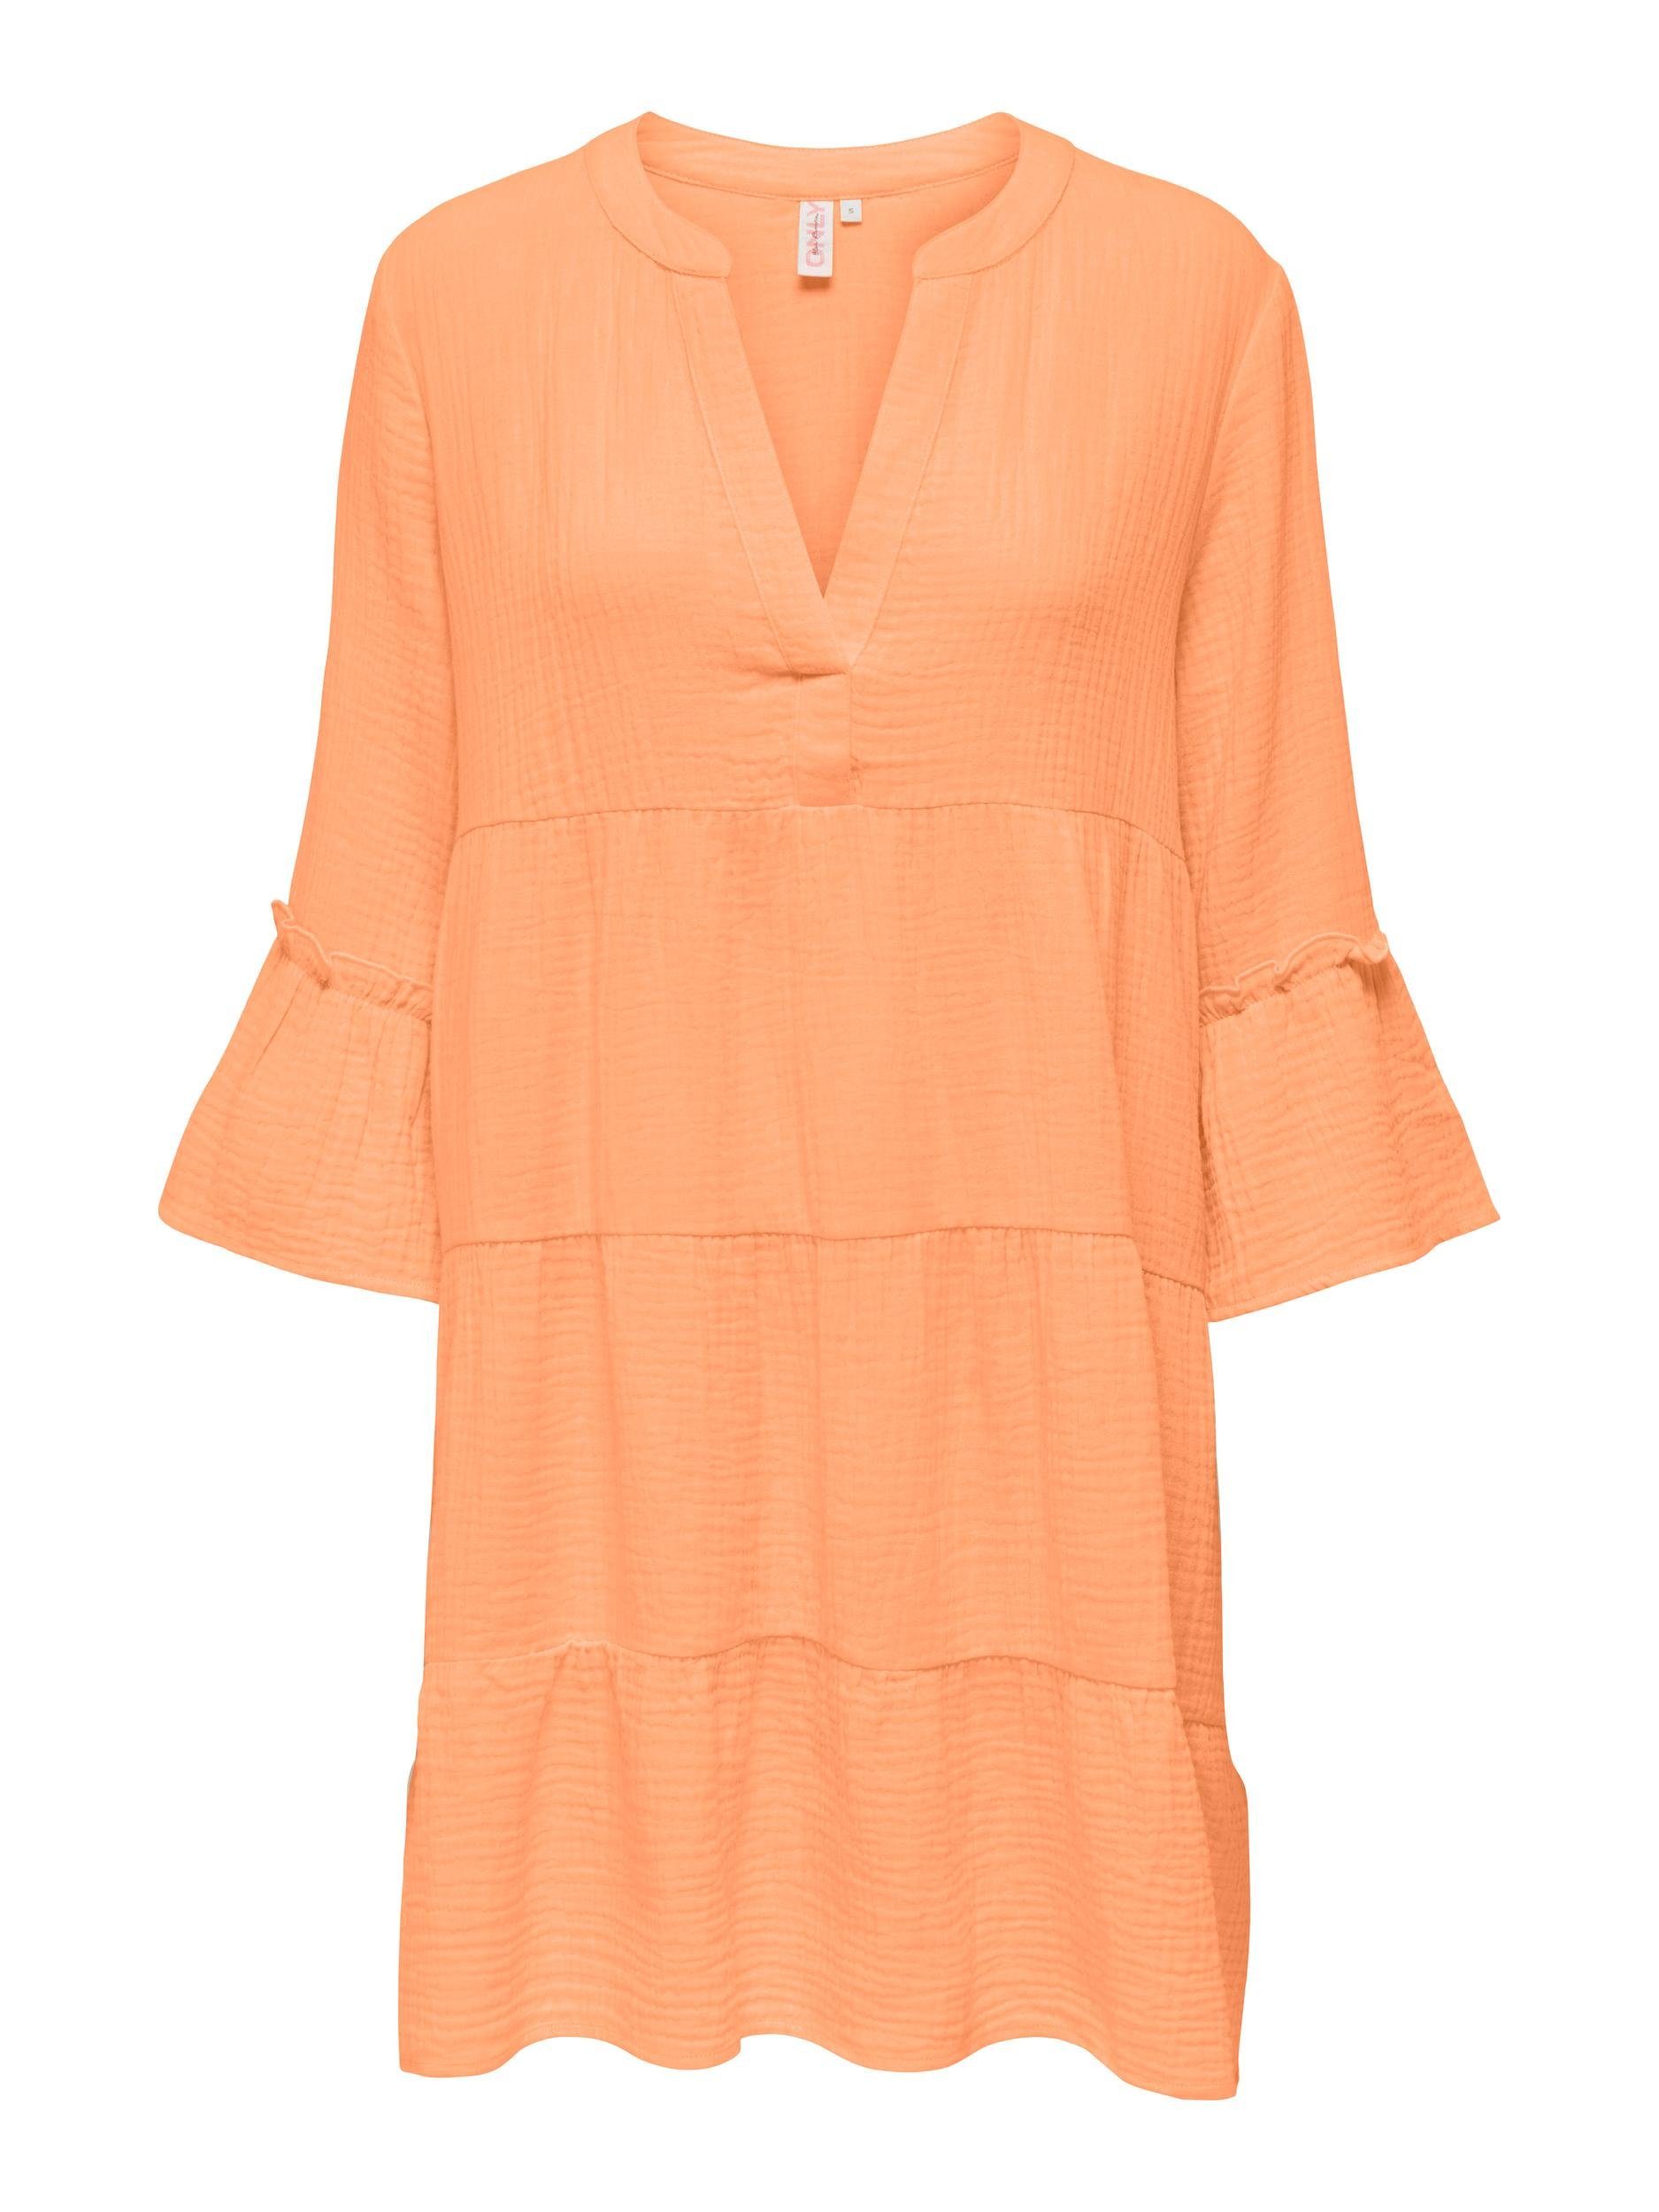 Voller Informationen! ONLY Minikleid Kleid orange